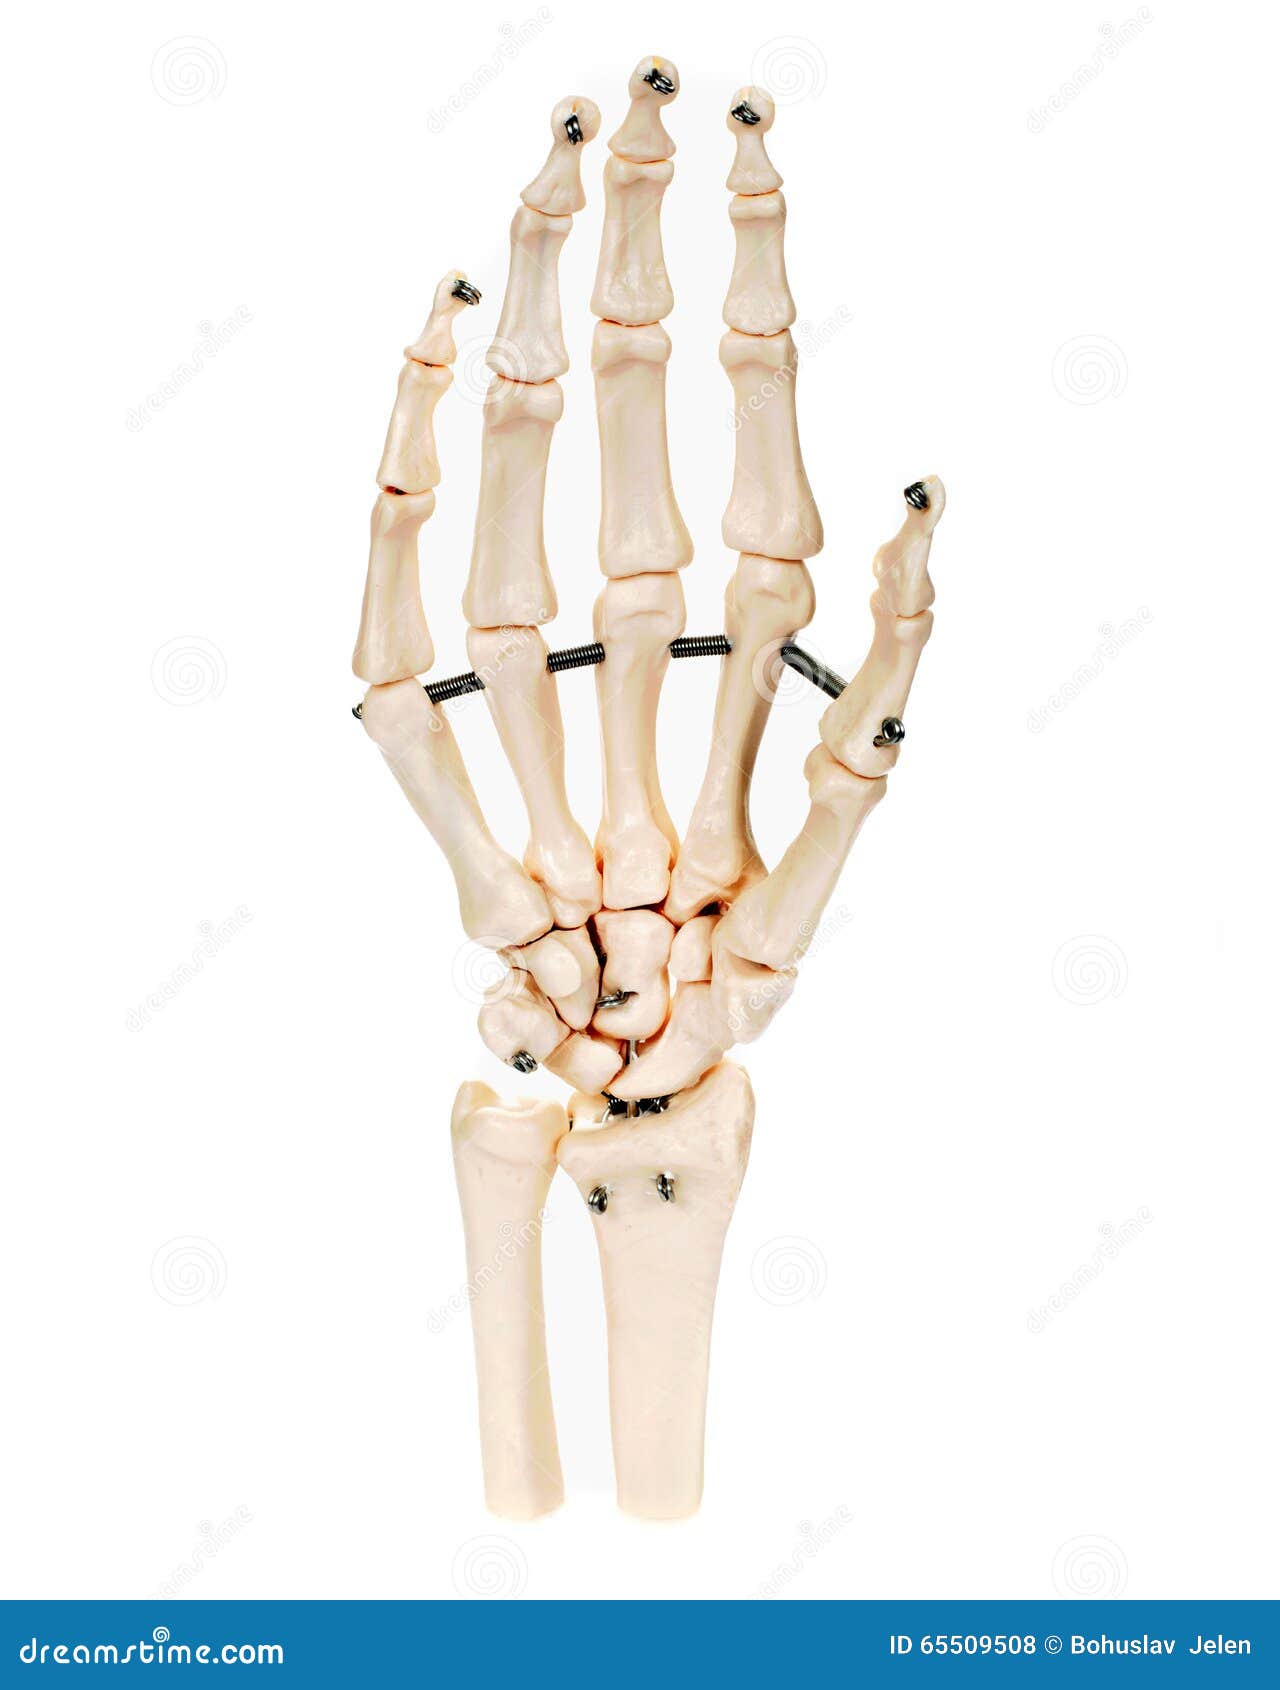 求一张人手解剖结构图，并带有详细的解释，谢谢_百度知道